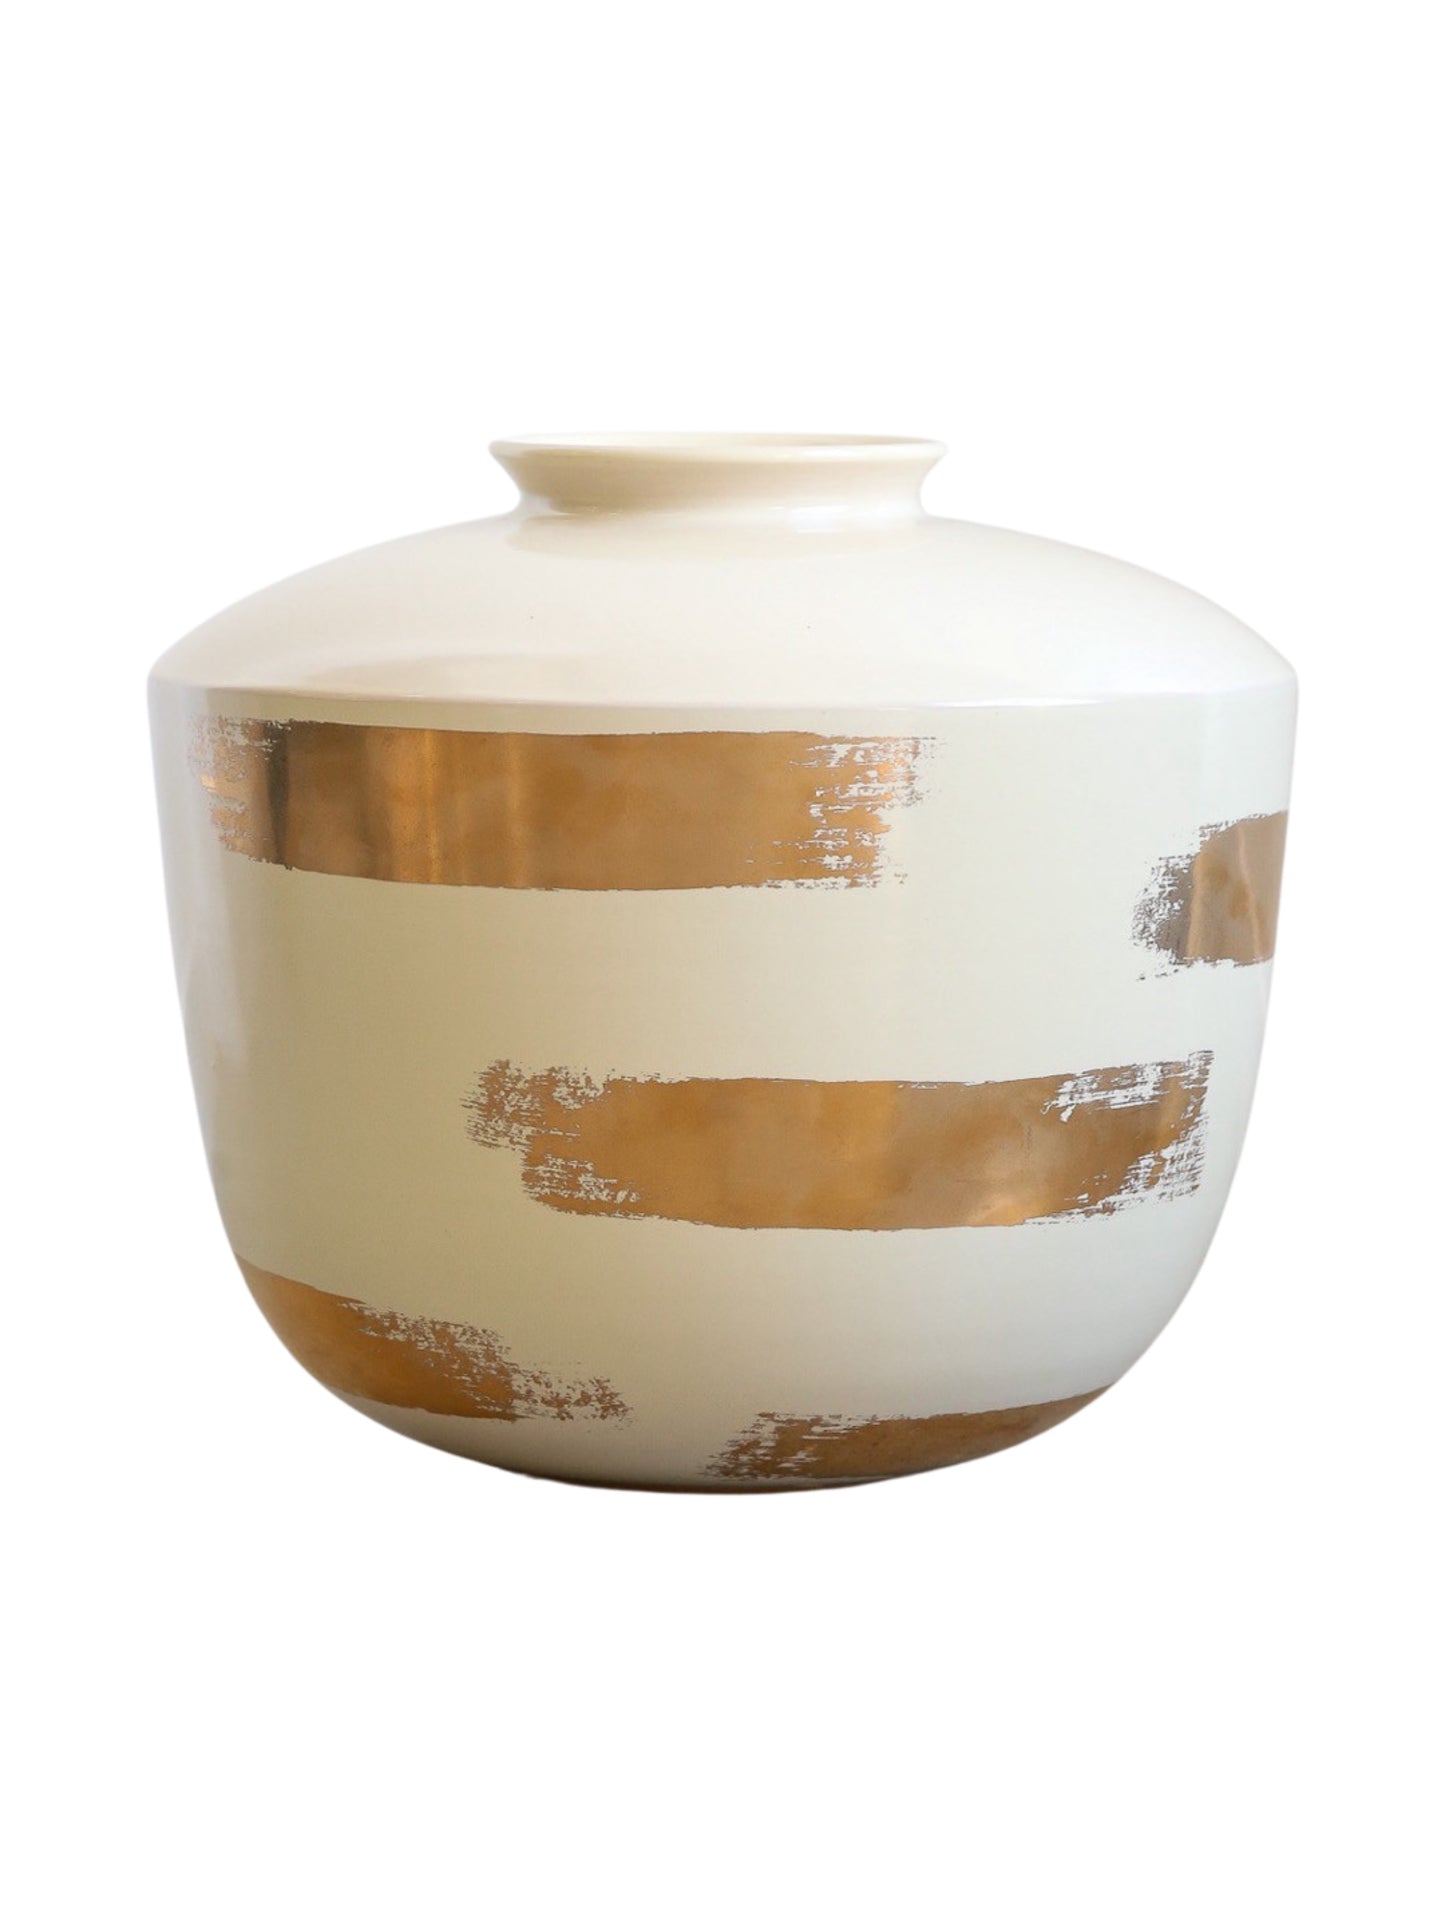 Kenzo Takada for Rometti Ceramic Vase with Gold Art Work